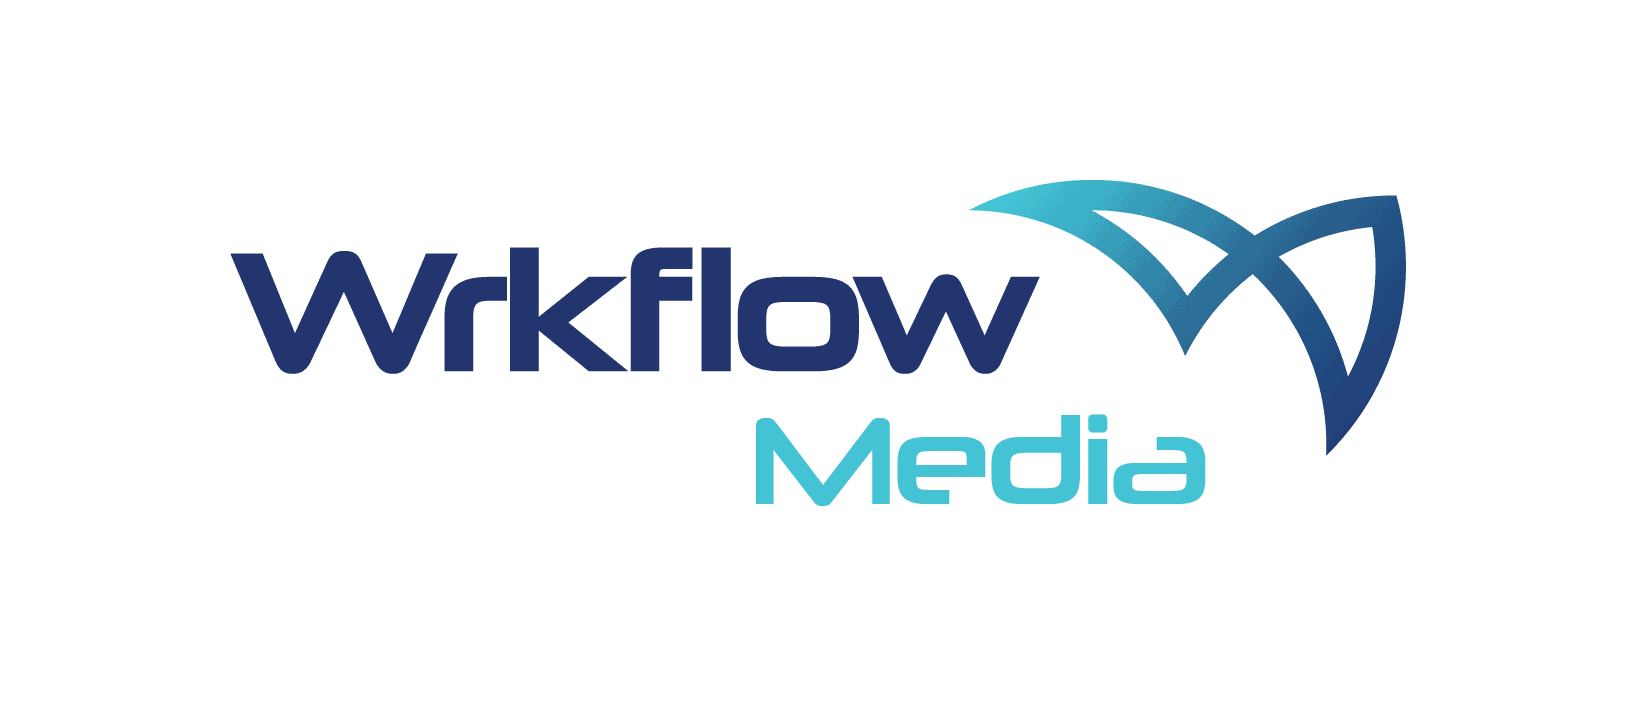 Workflow media logo e1630879464138